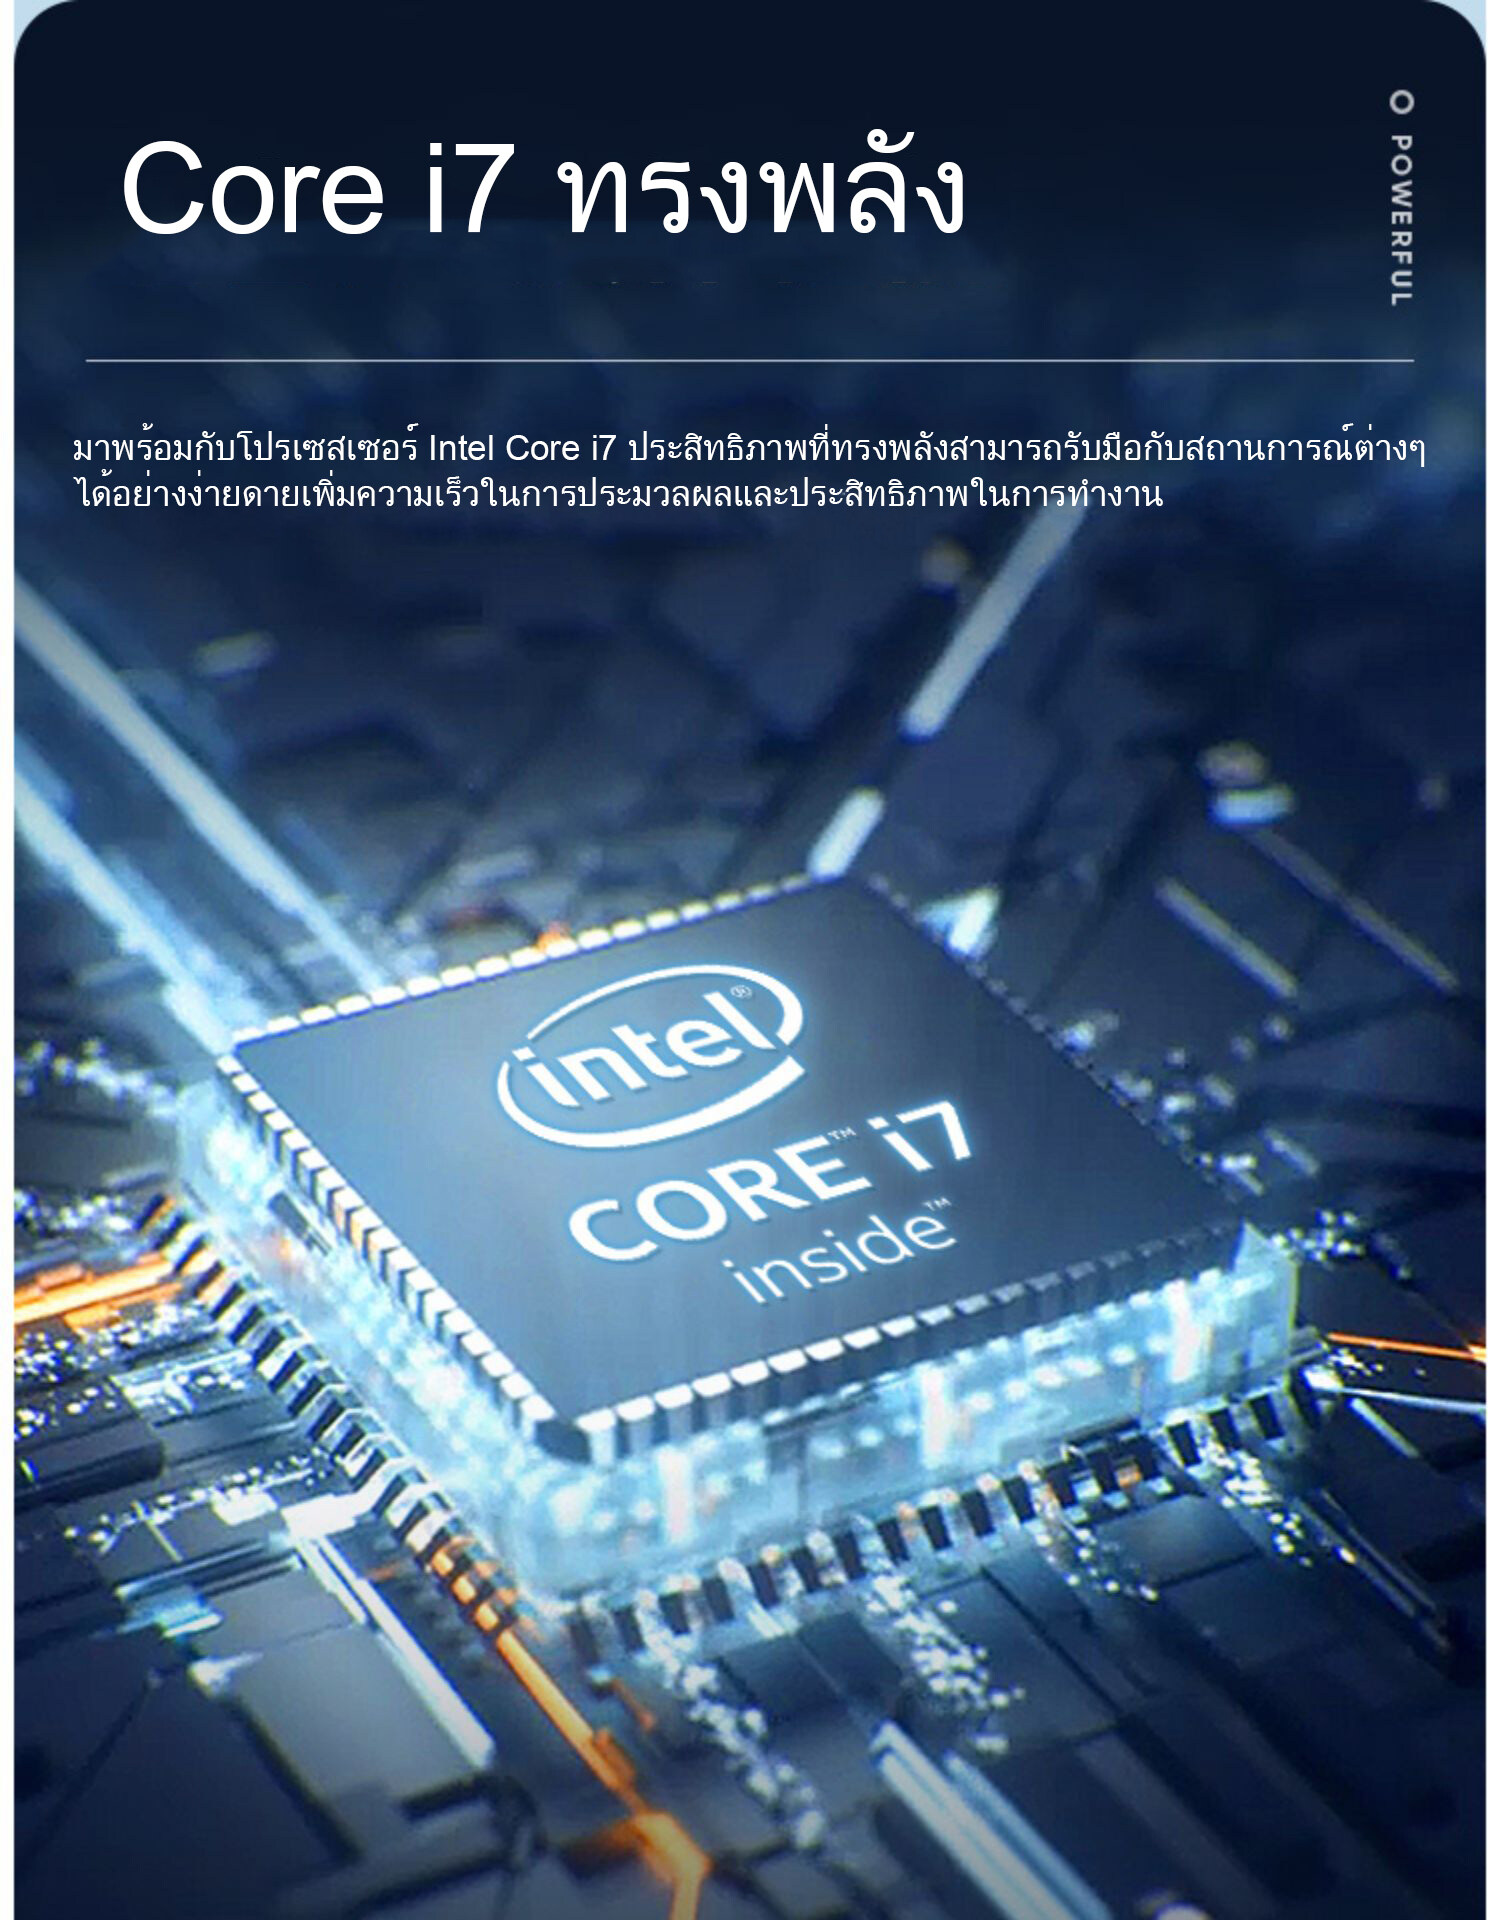 รูปภาพของ Intel Core i7 ออล - อิน - วัน PC ขนาด 24 นิ้ว คอมพิวเตอร์ เดสก์ท็อปพีซี แรม 8G 256G SSD เมาส์ไร้สายและคีย์บอร์ดไร้สายฟรี computer all in one ส่งเมาส์ไร้สาย ASUS